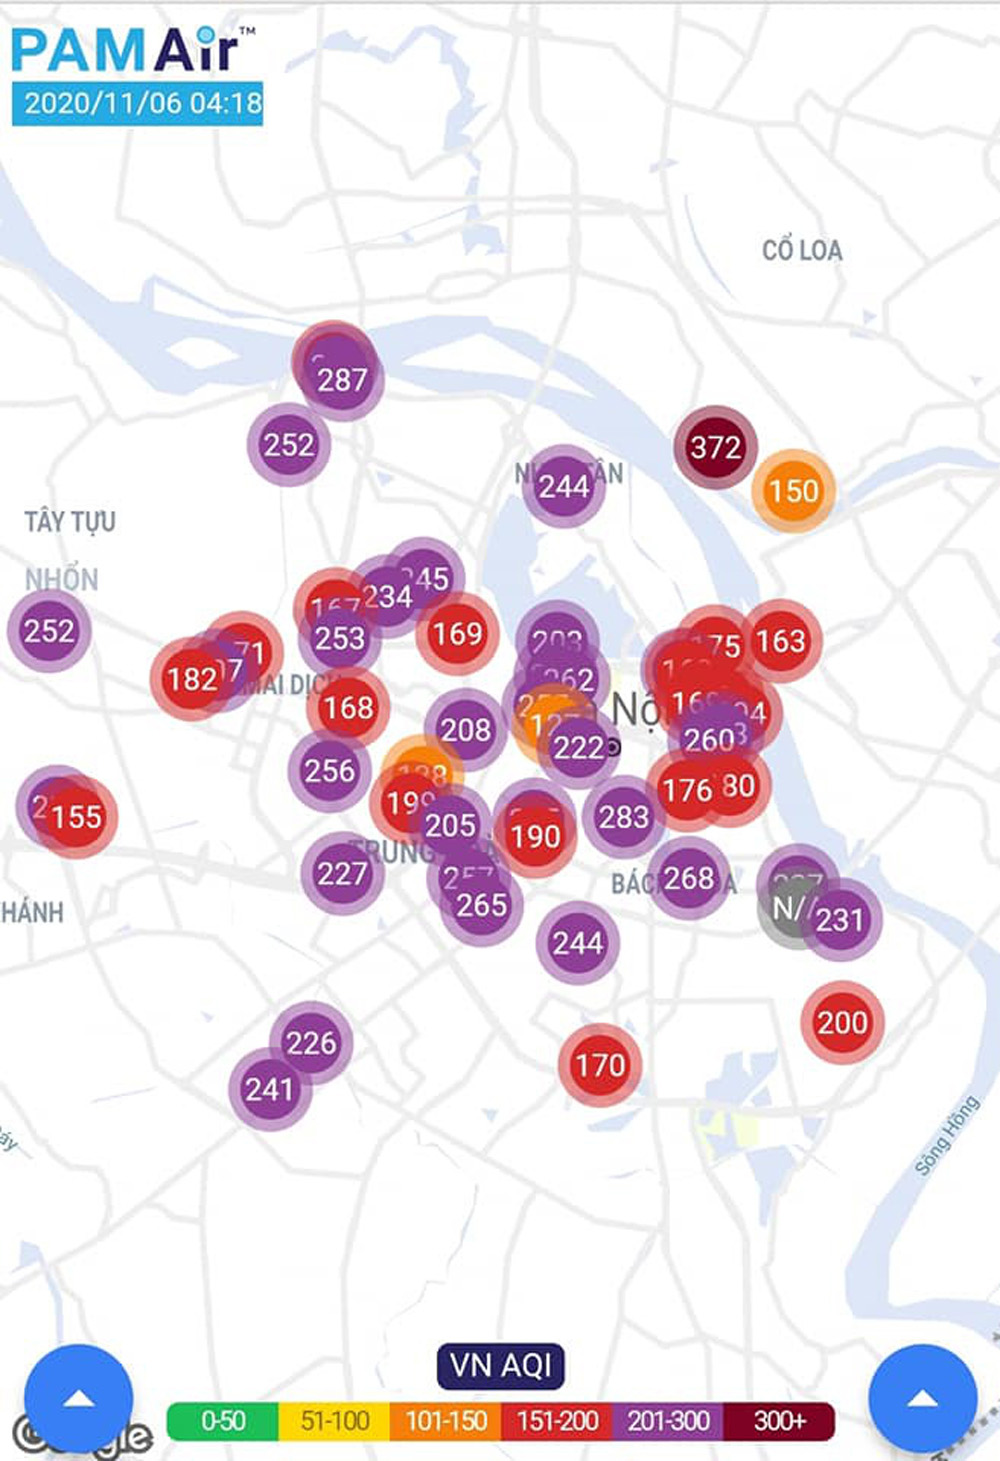 Gần đây nhất vào ngày 6.11, hàng loạt các hệ thống đo chỉ số chất lượng không khí tại Hà Nội đều chạm ngưỡng tím - nguy hại sức khỏe con người, đi kèm đó là với các khuyến cáo người dân hạn chế ra ngoài, mở cửa, đã cho thấy tình hình ô nhiễm bụi mịn PM2.5 trở nên khá nghiêm trọng